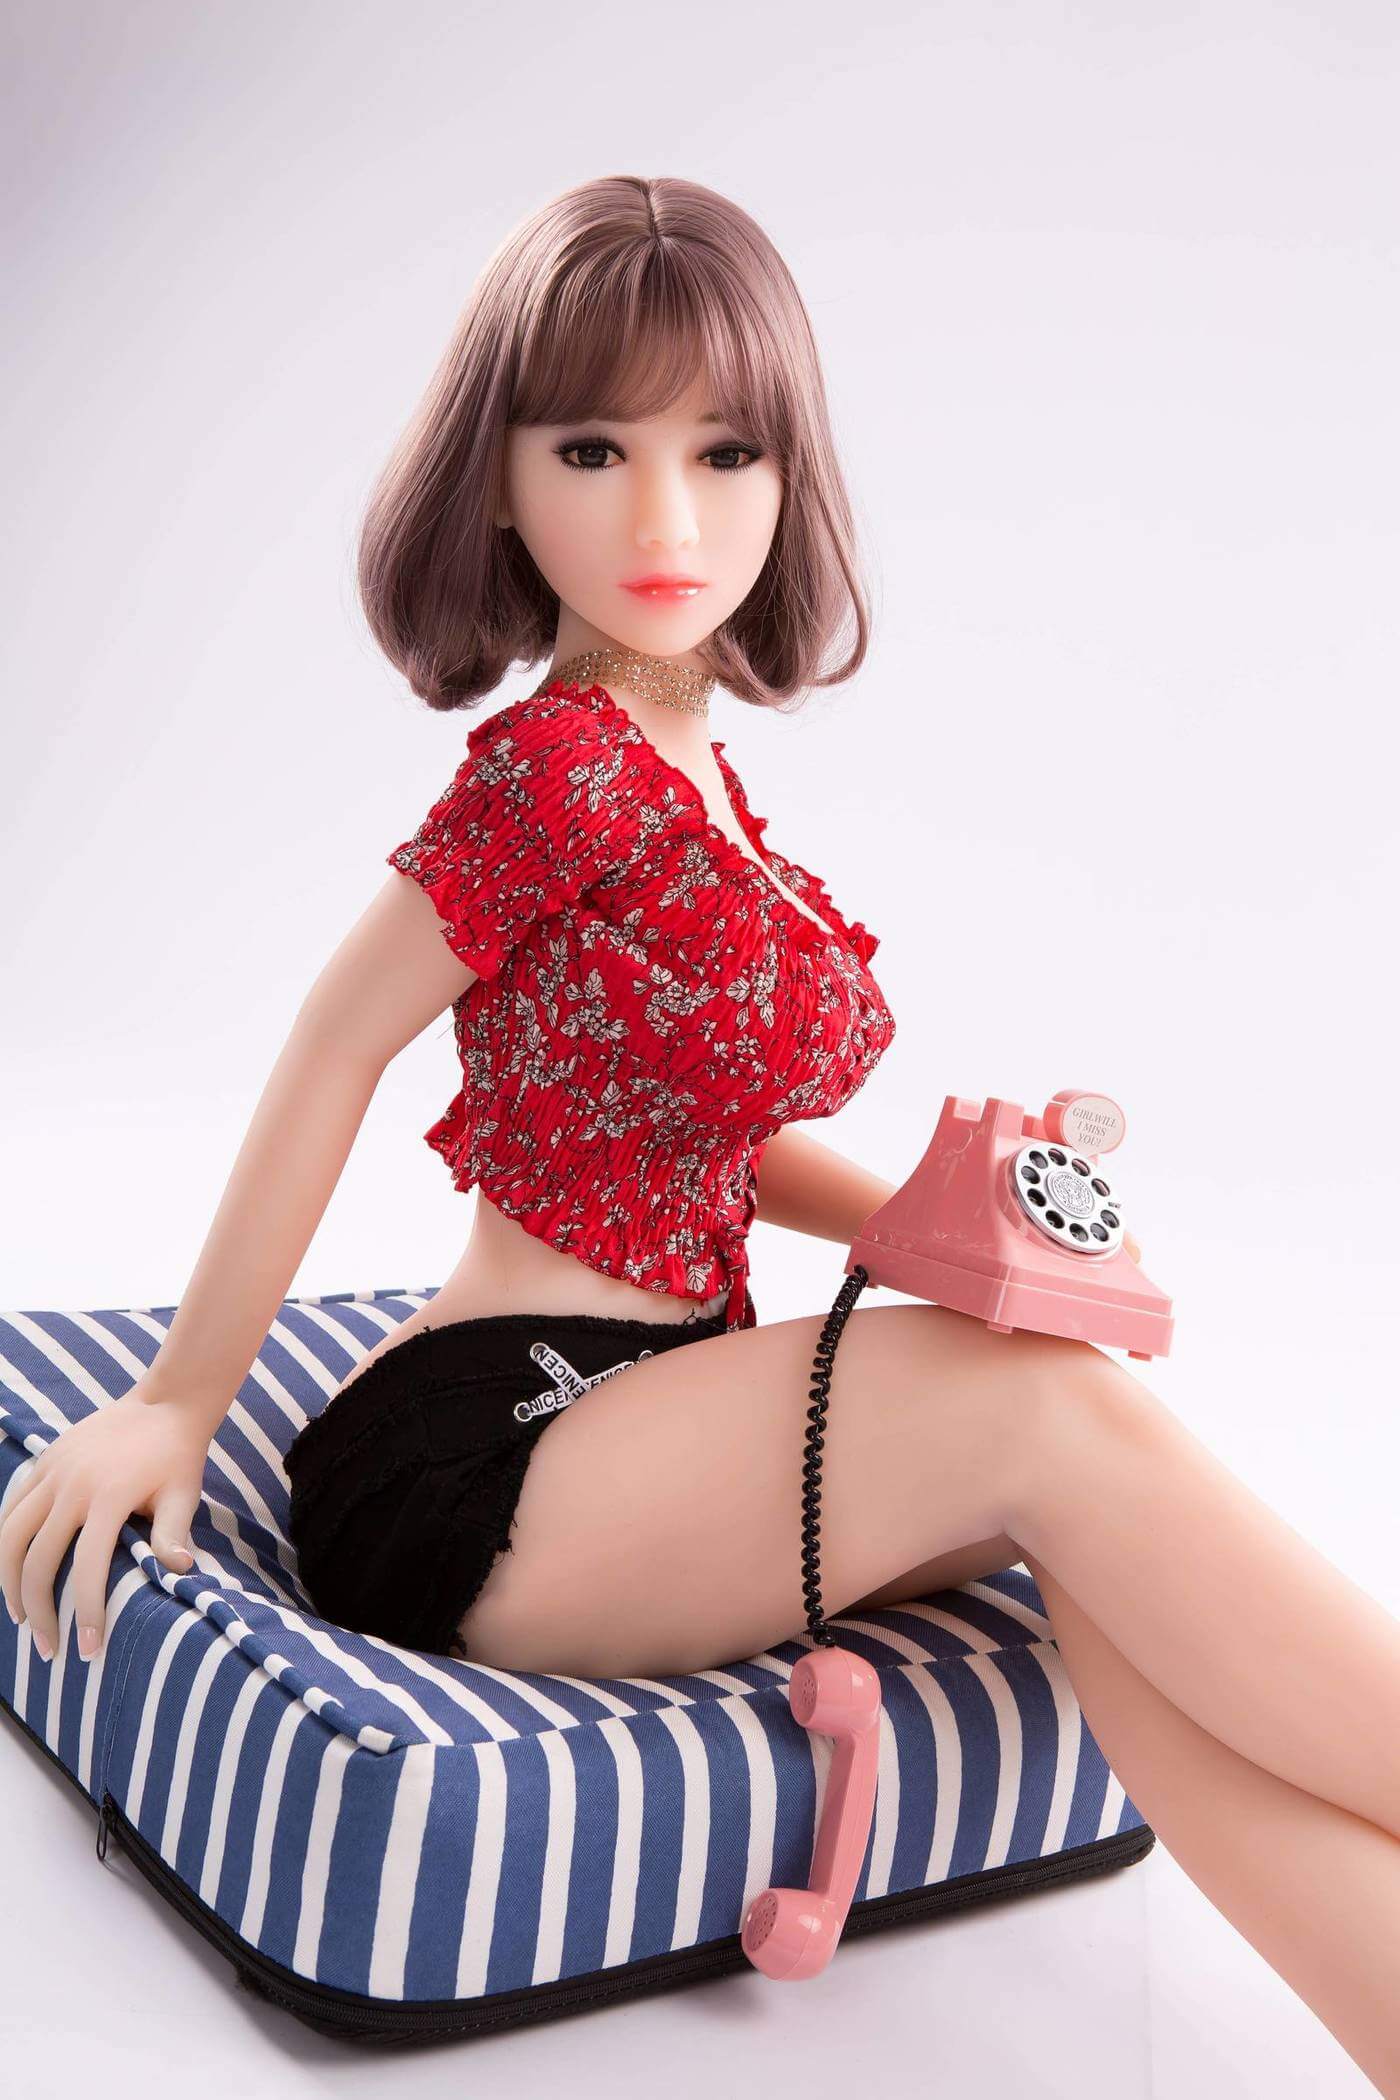 Asian teen short hair sex dolls_9_4